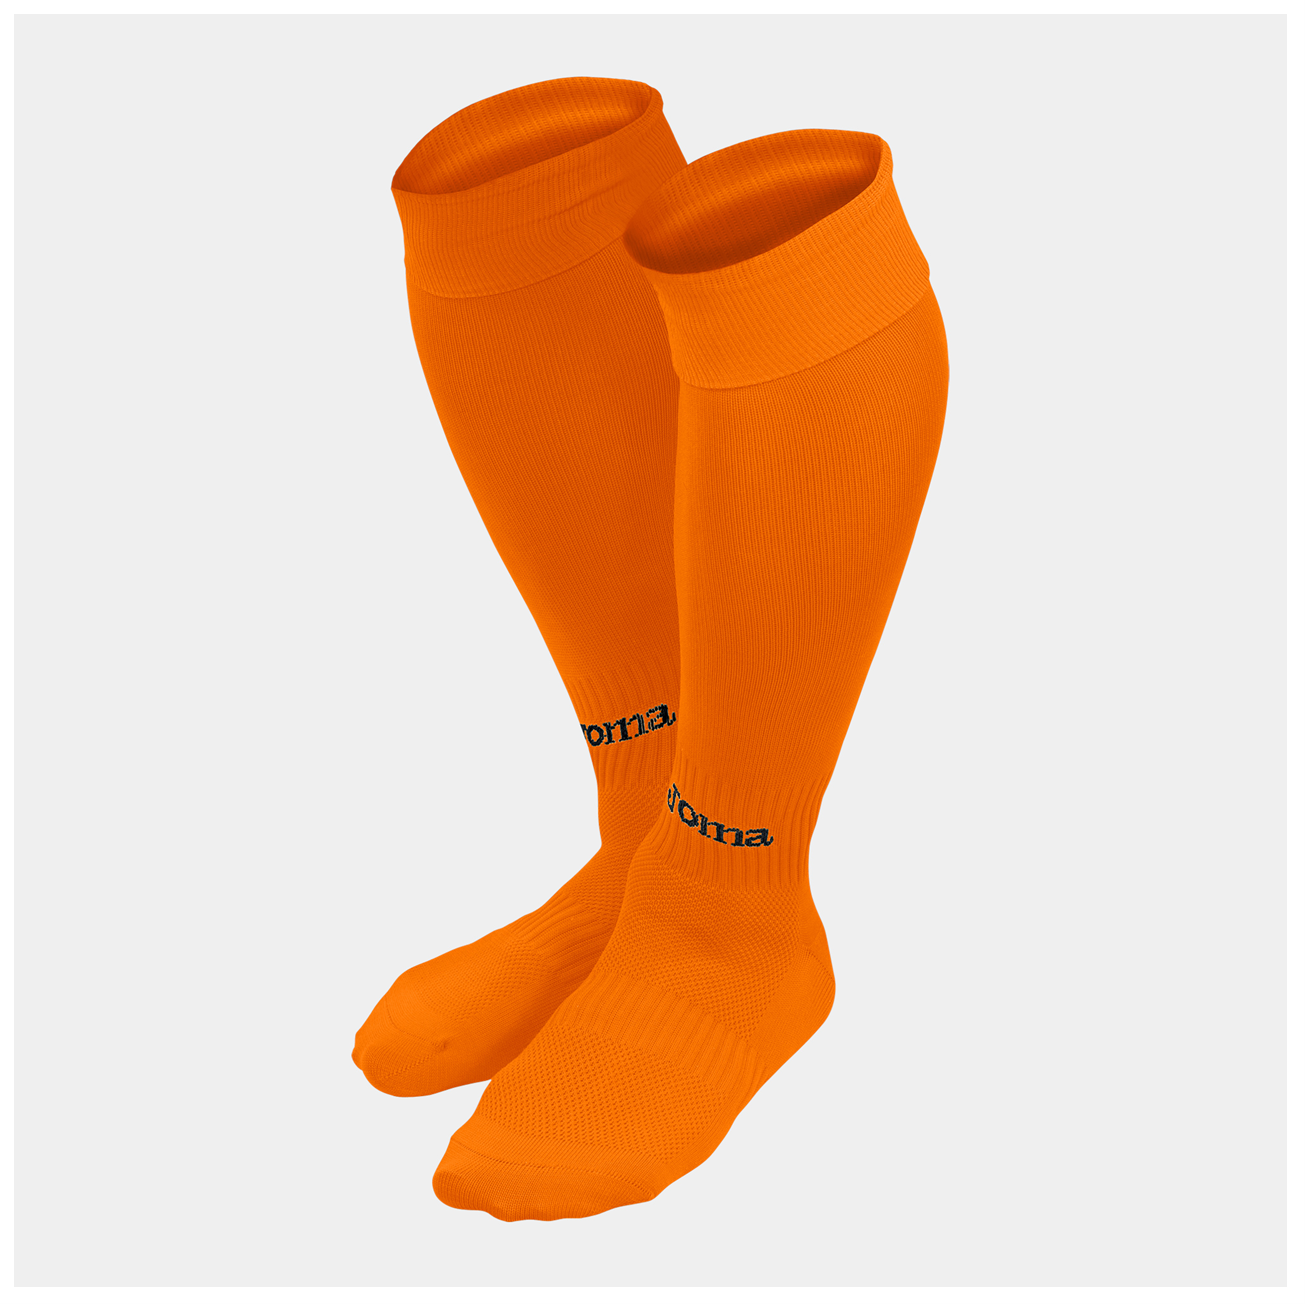 Joma Classic II Football Socks- Orange